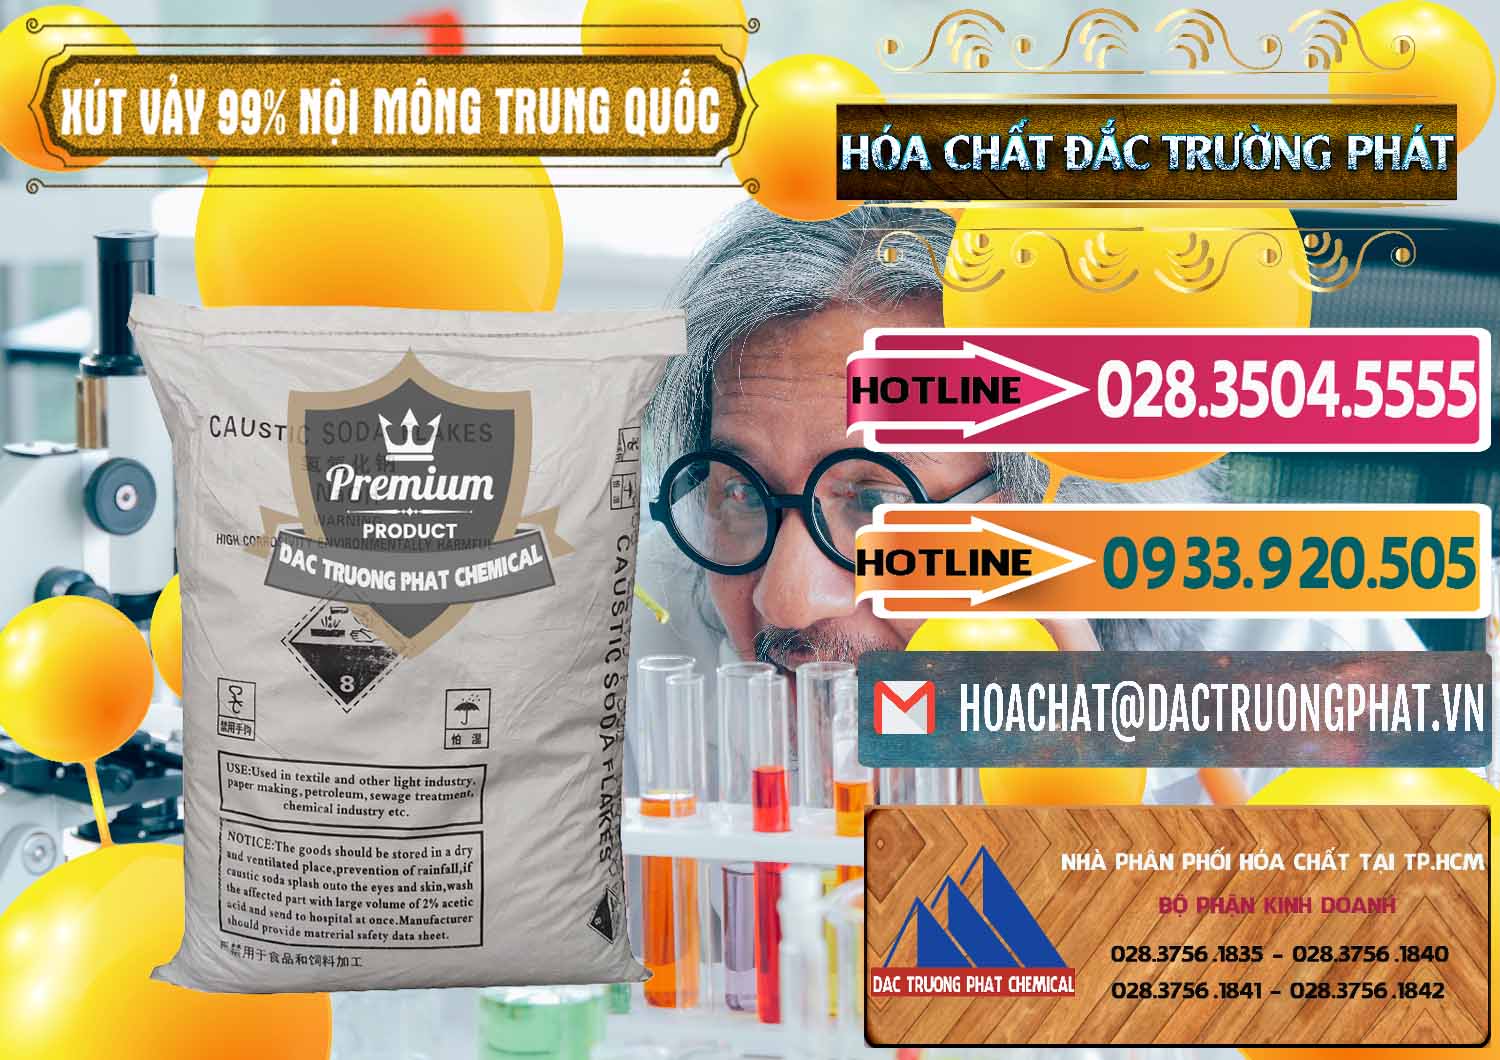 Kinh doanh ( bán ) Xút Vảy - NaOH Vảy 99% Nội Mông Trung Quốc China - 0228 - Nơi nhập khẩu ( cung cấp ) hóa chất tại TP.HCM - dactruongphat.vn